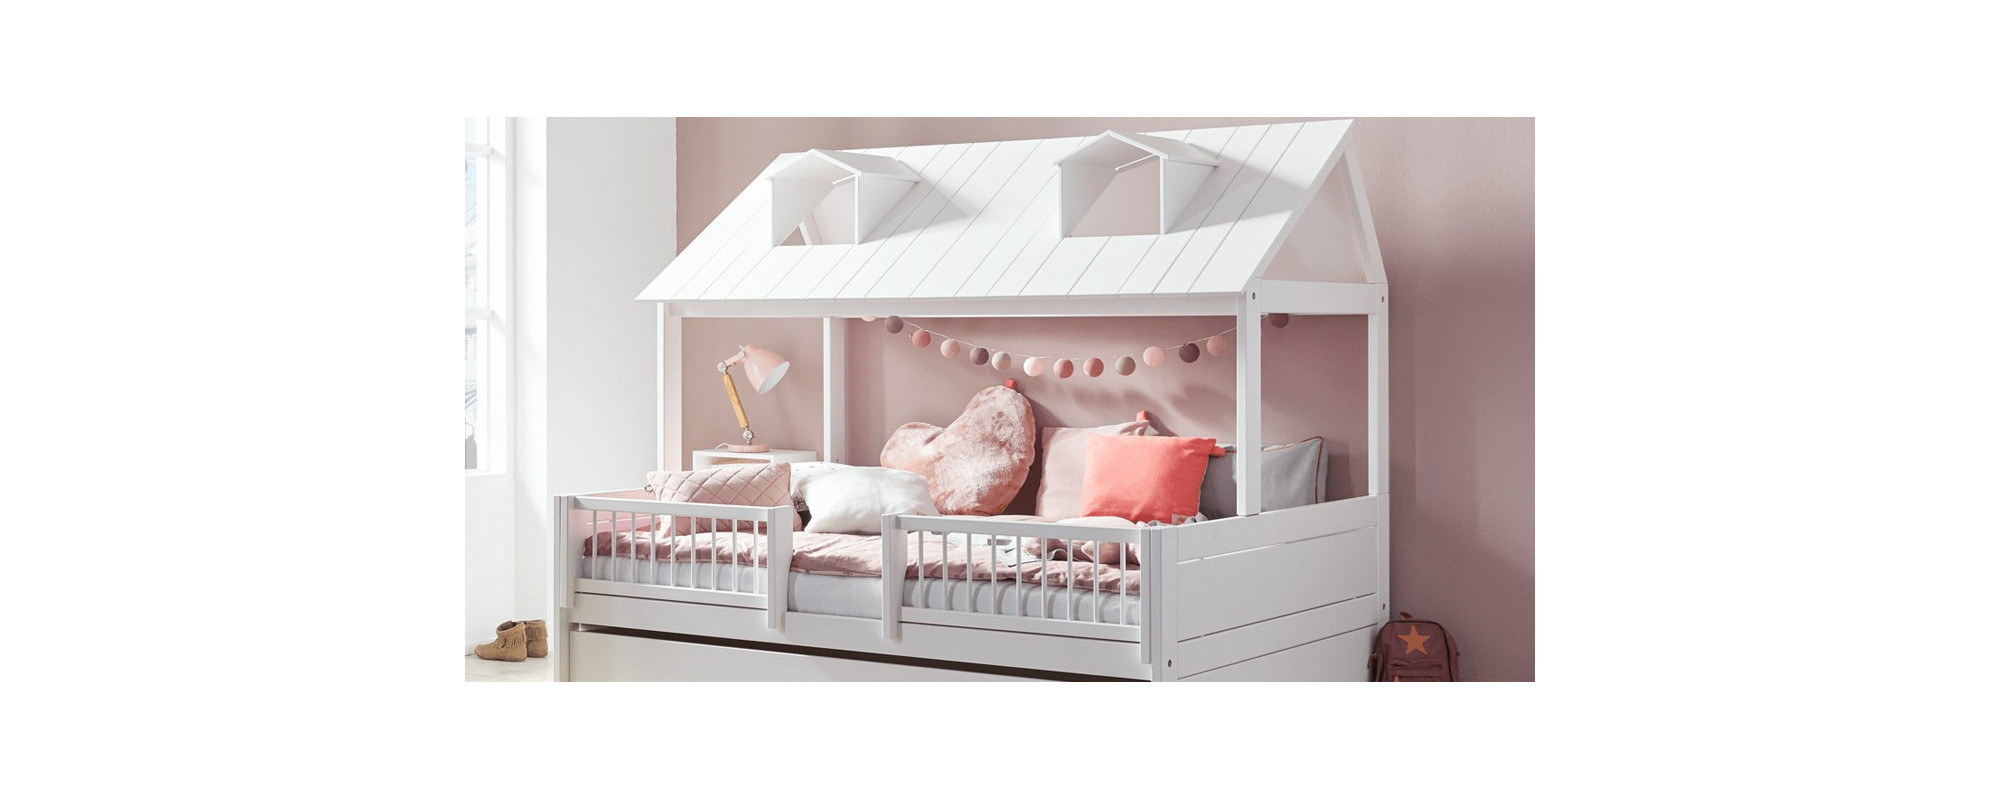 Life-Time BEACH-HOUSE – la perle de sommeil dans chaque chambre d’enfant!